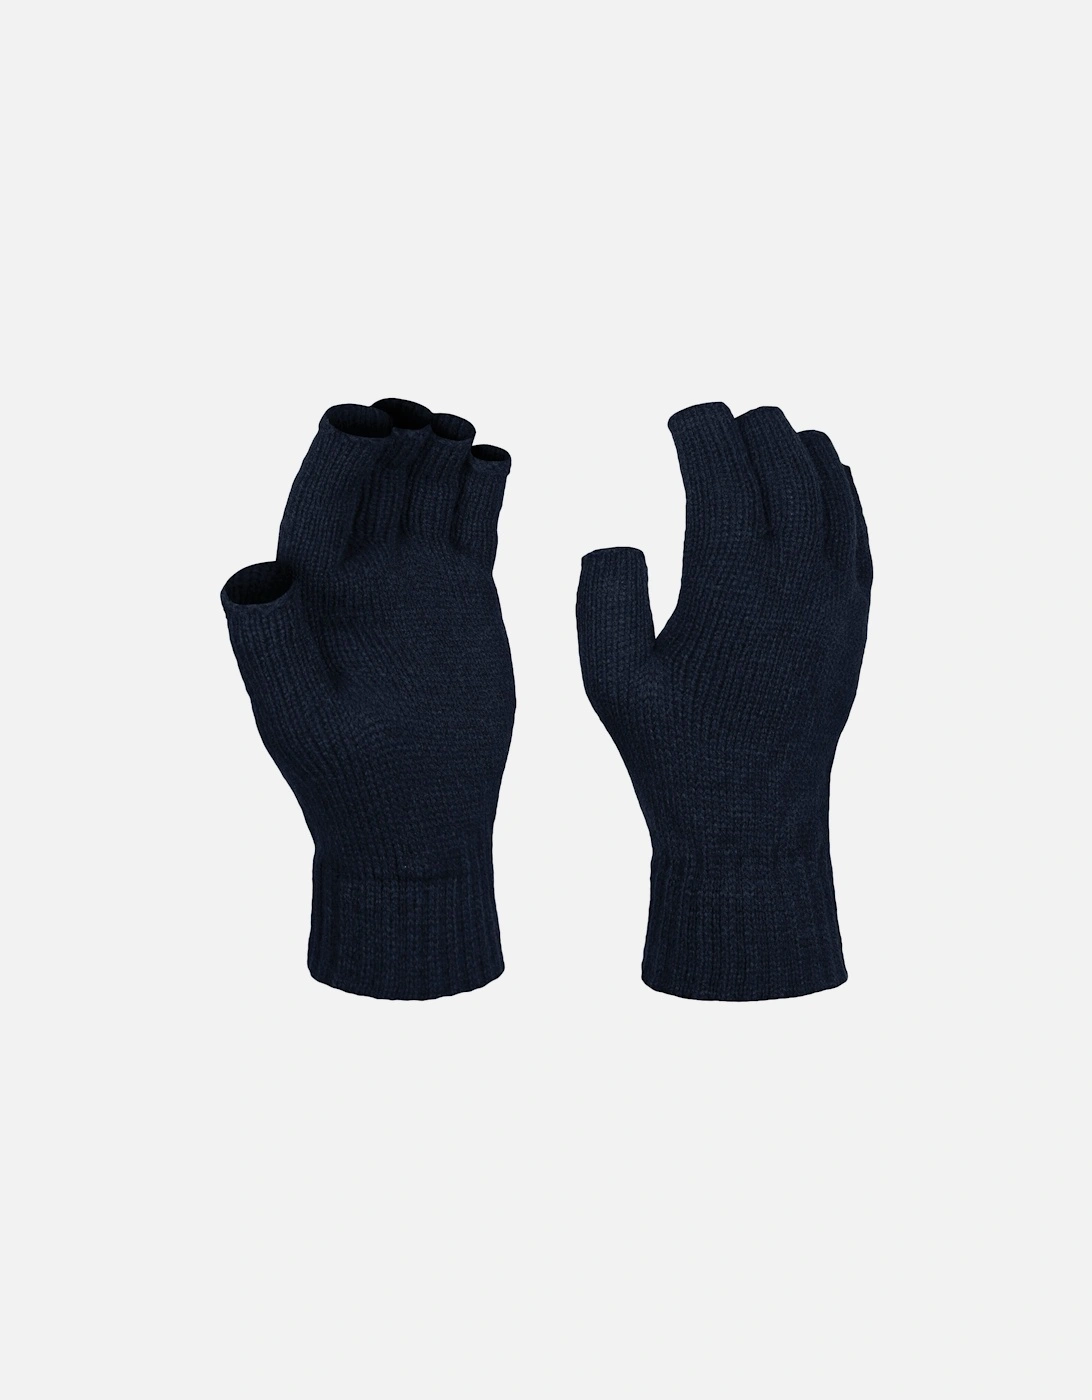 Unisex Fingerless Mitts / Gloves, 4 of 3